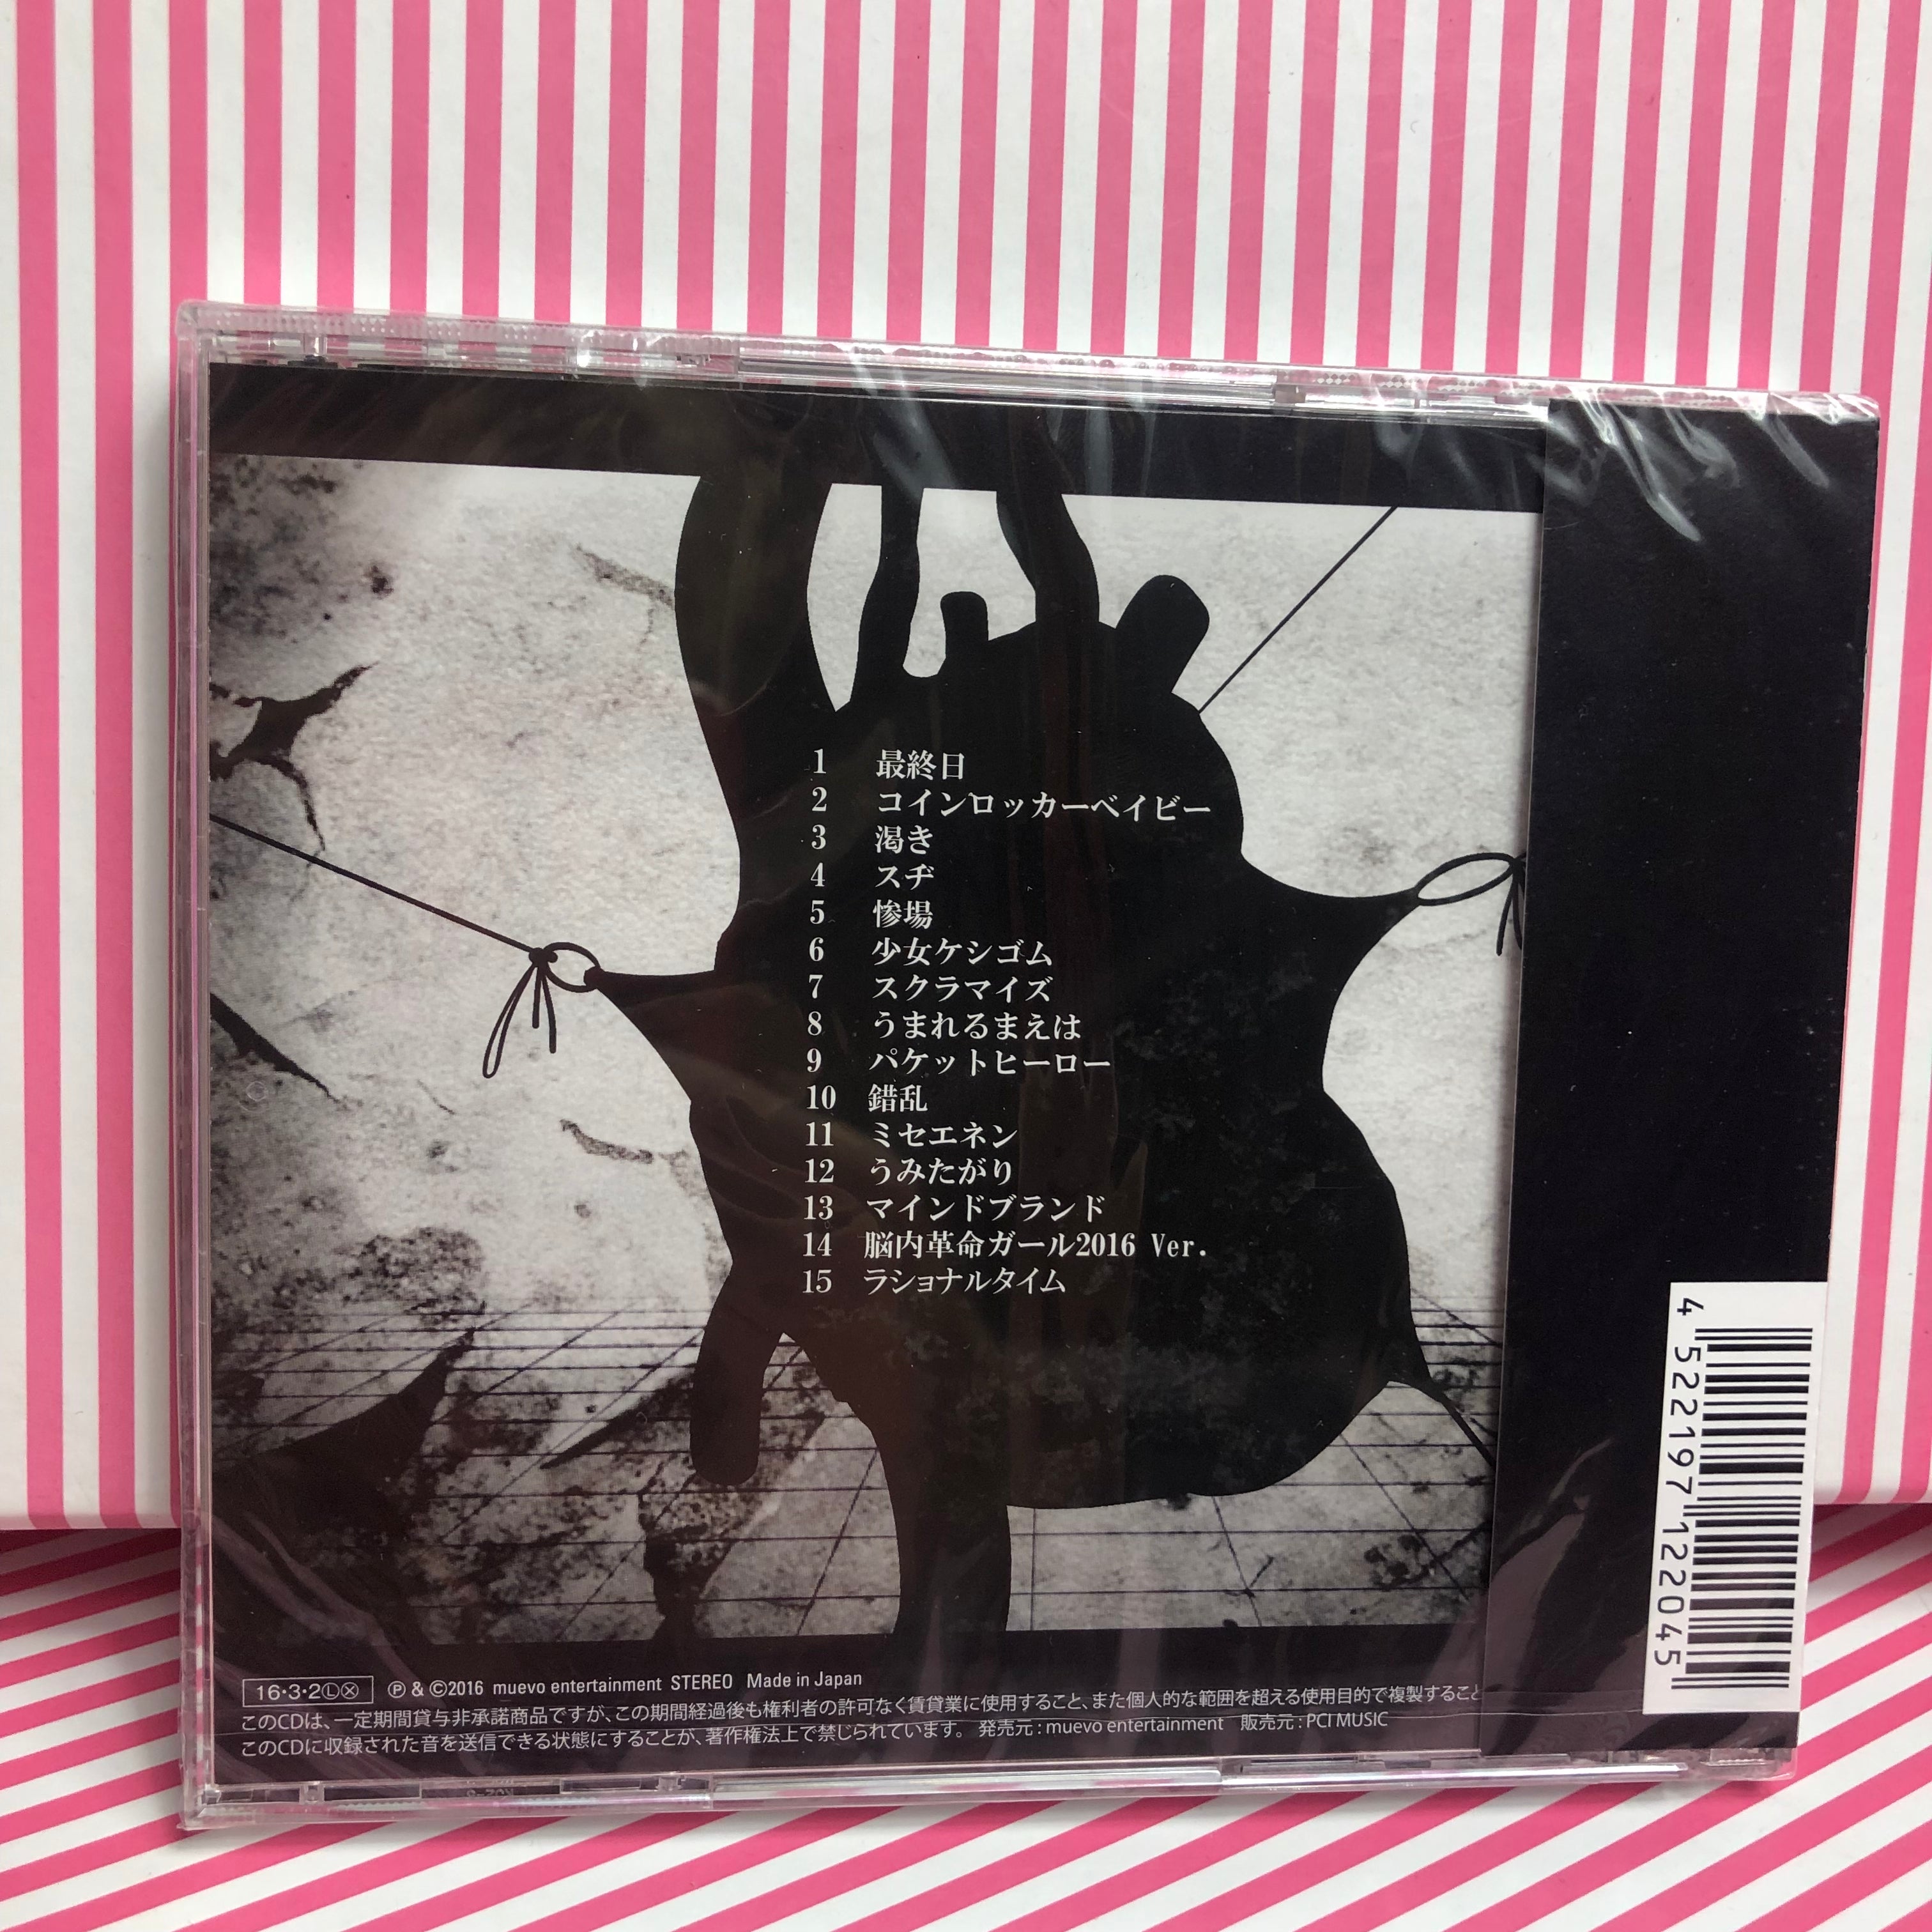 MARETU - Coin Locker Baby Vocaloid CD